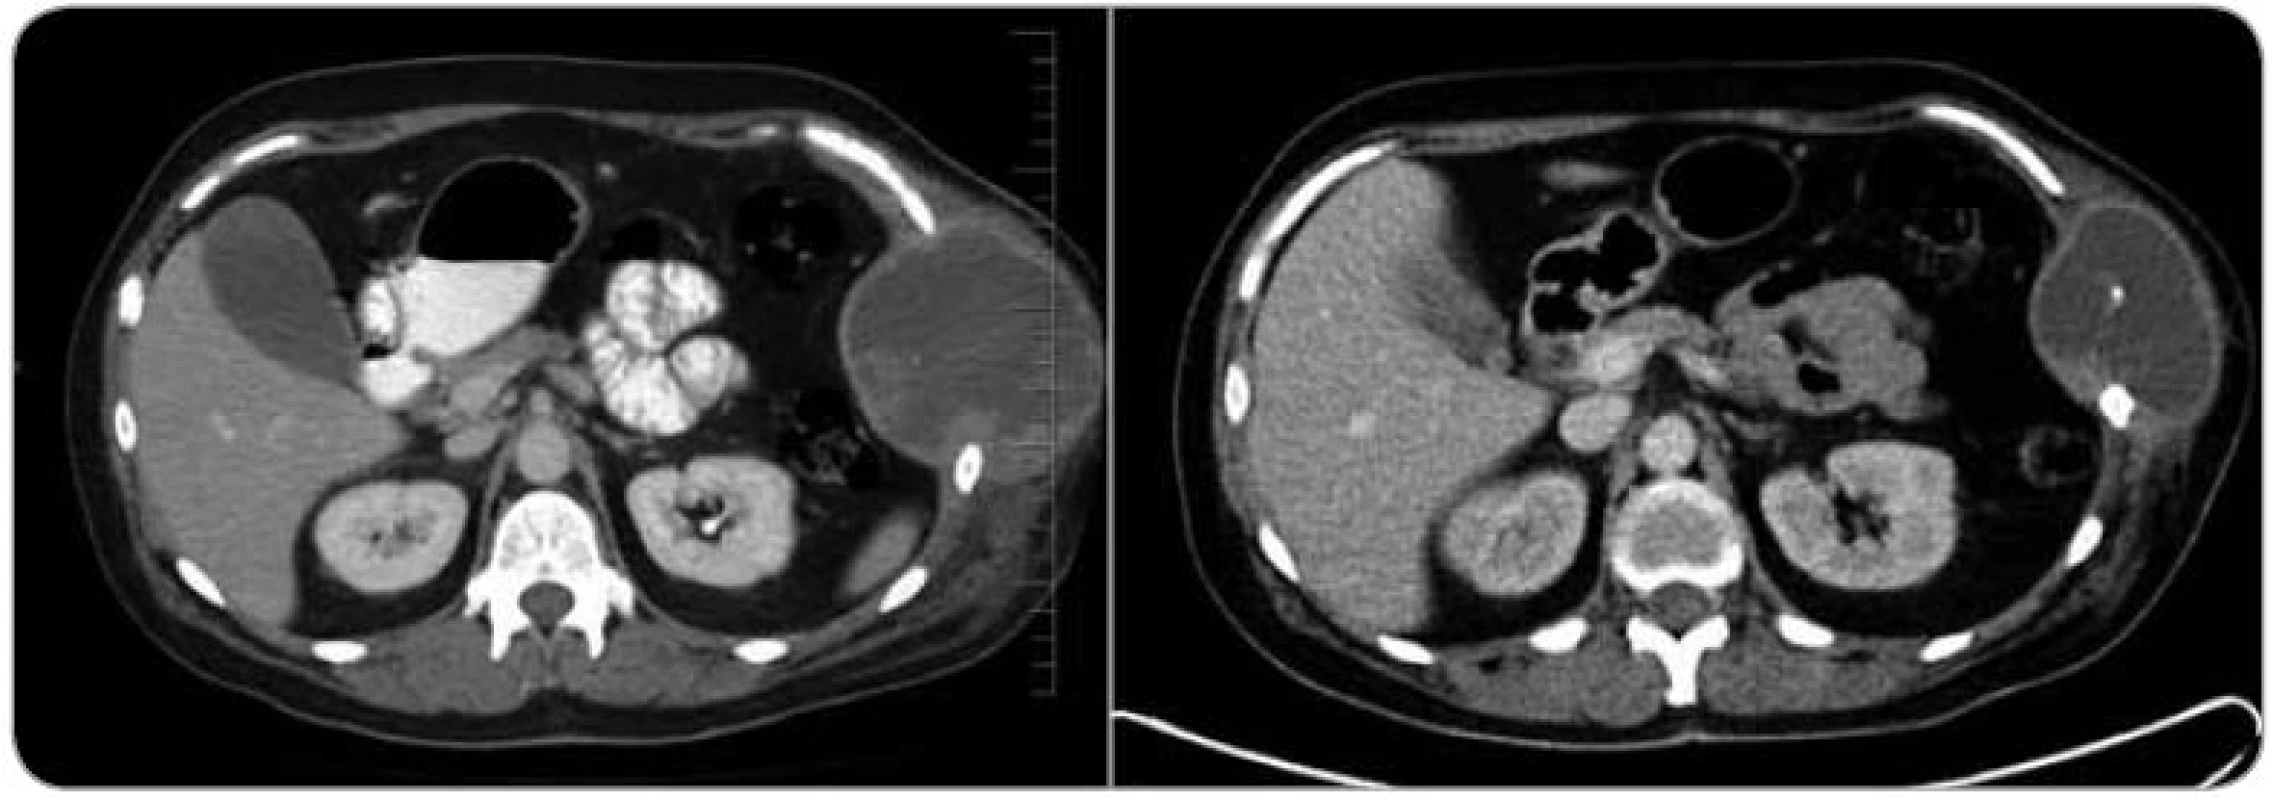 Srovnání CT vyšetření z ledna 2012 (vlevo) a z dubna 2012 po aplikaci tří cyklů neoadjuvantní chemoterapie (vpravo). Je znatelné zmenšení tumoru hrudní stěny po léčbě.